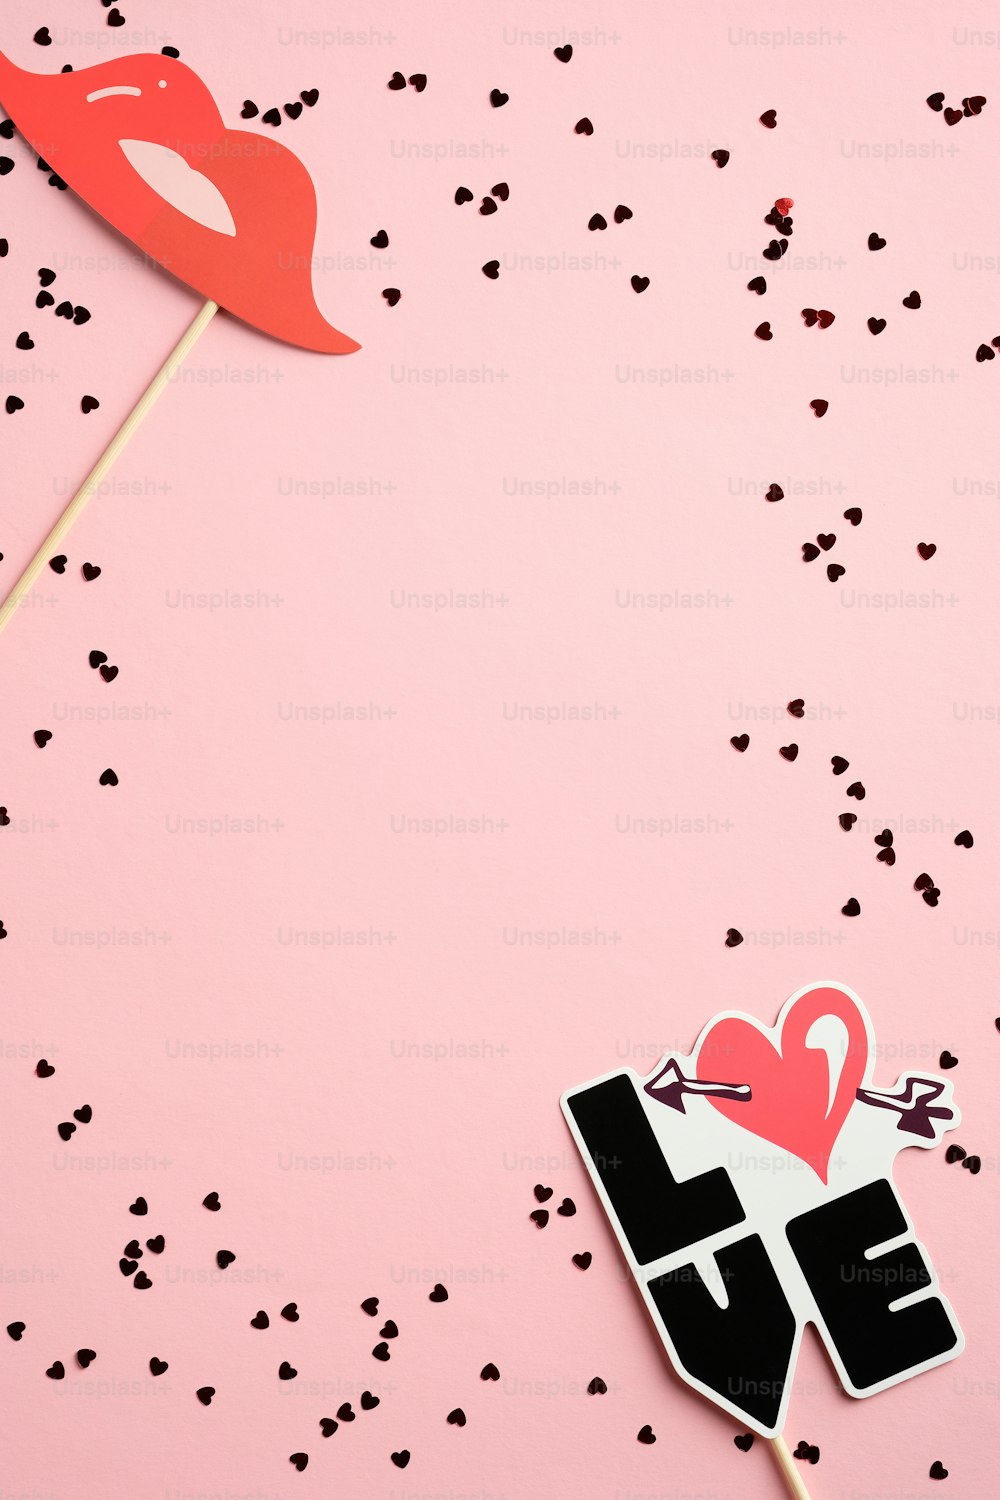 ピンクのテーブルにモダンな装飾と紙吹雪を配したバレンタインデーの縦型バナーテンプレート。バレンタインデーのギフト券のモックアップ、グリーティングカードのデザイン。